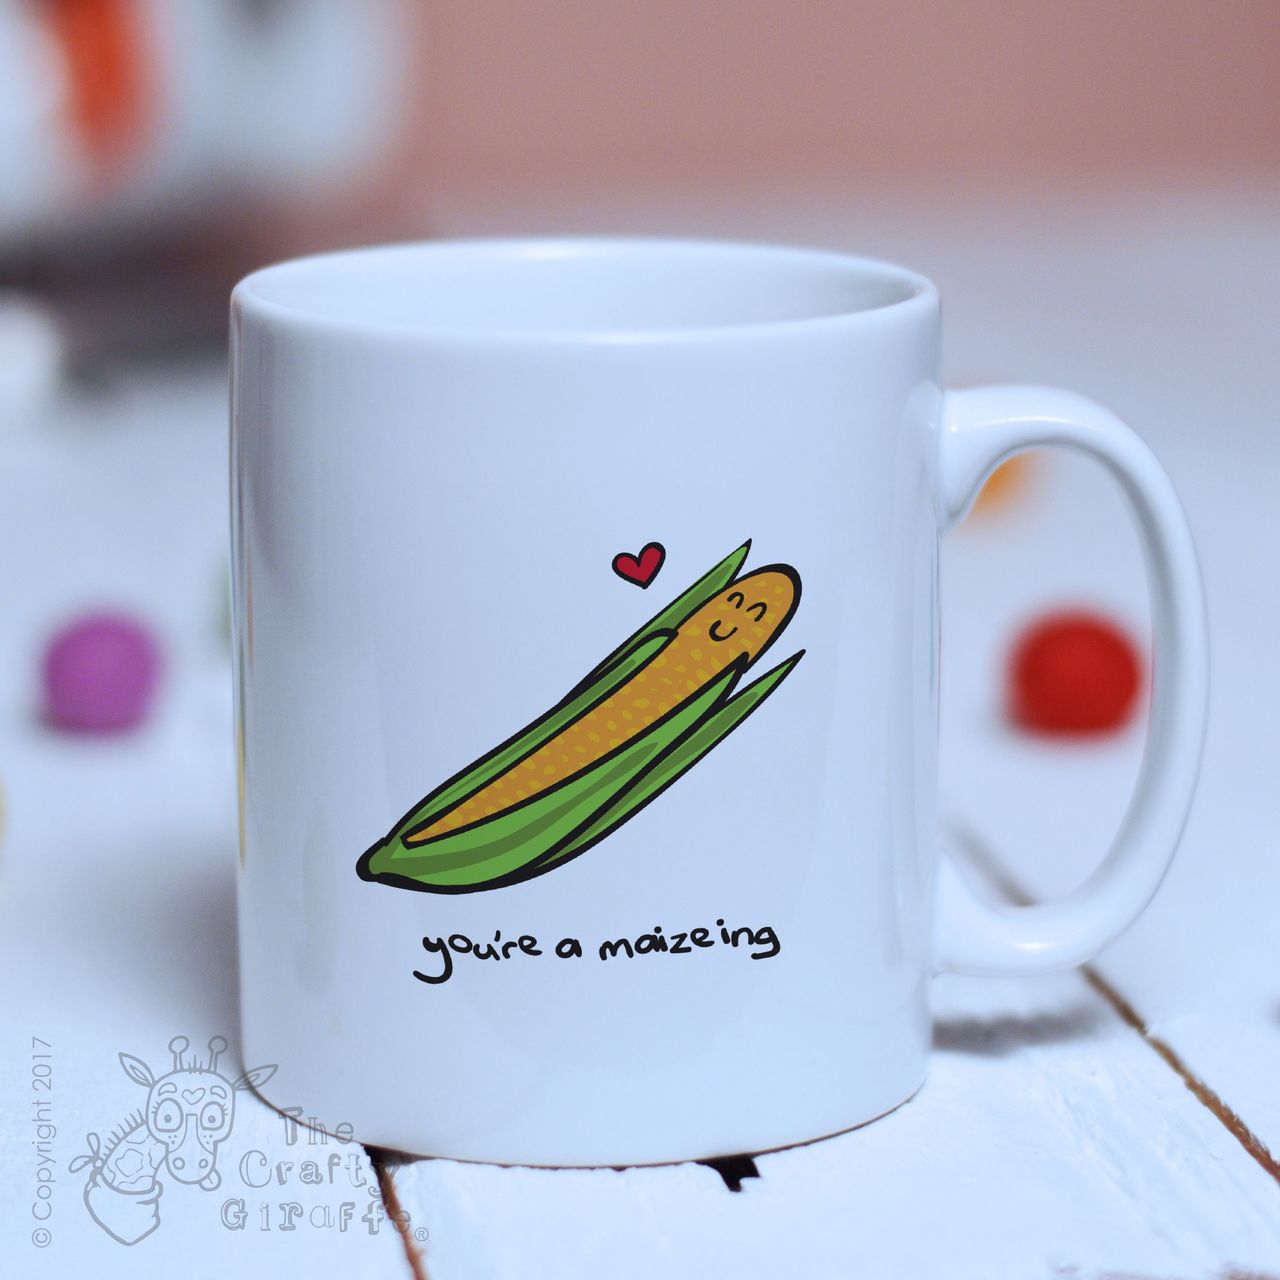 You’re a maizeing mug